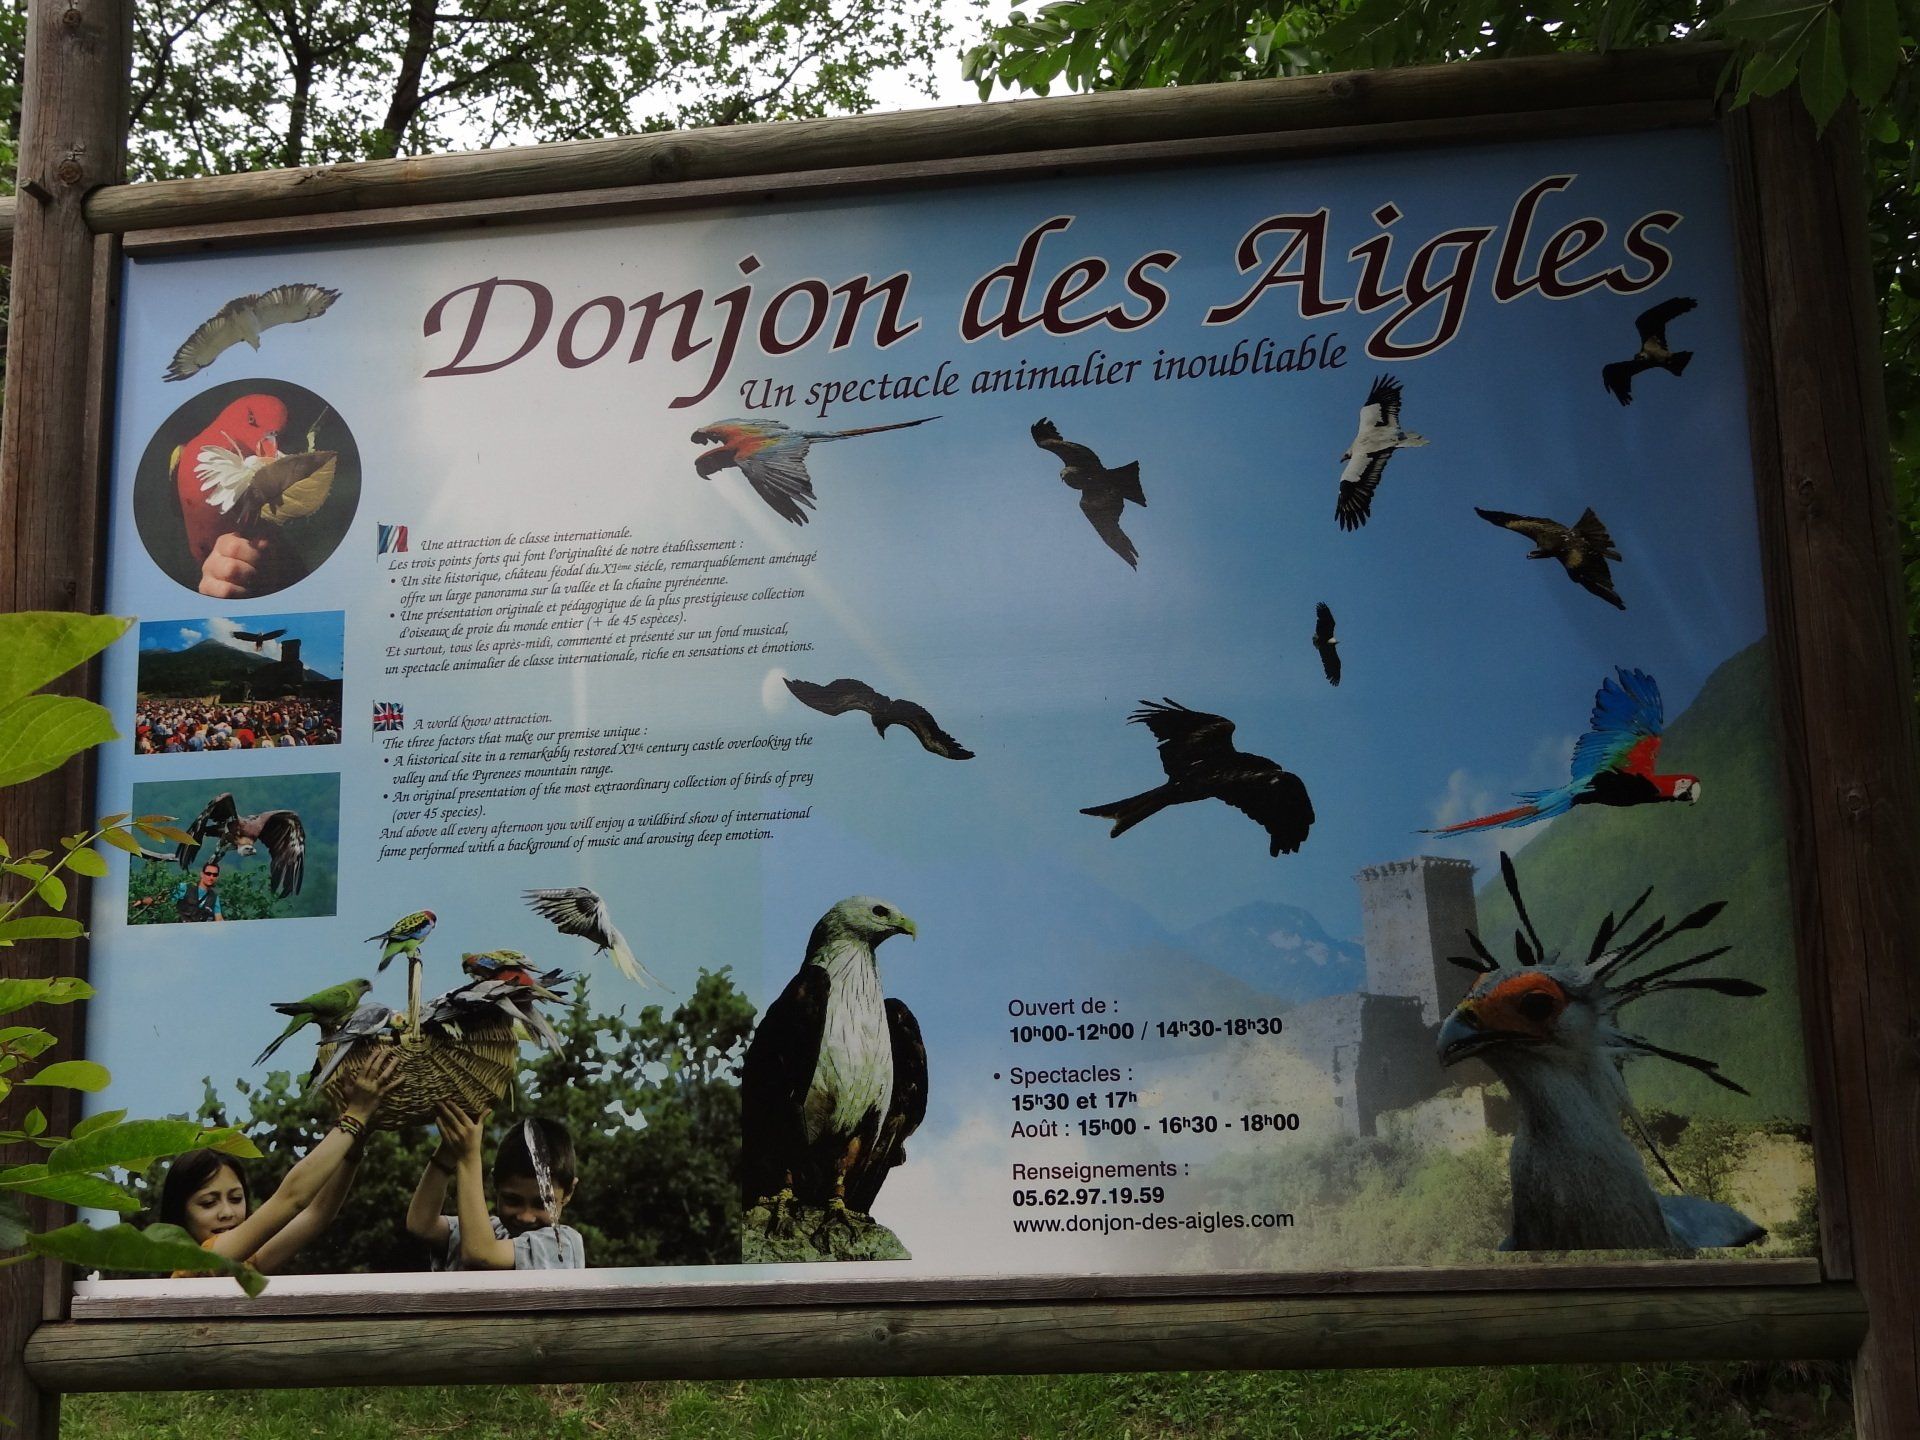 Donjon des Aigles Lourdes Pyrénées